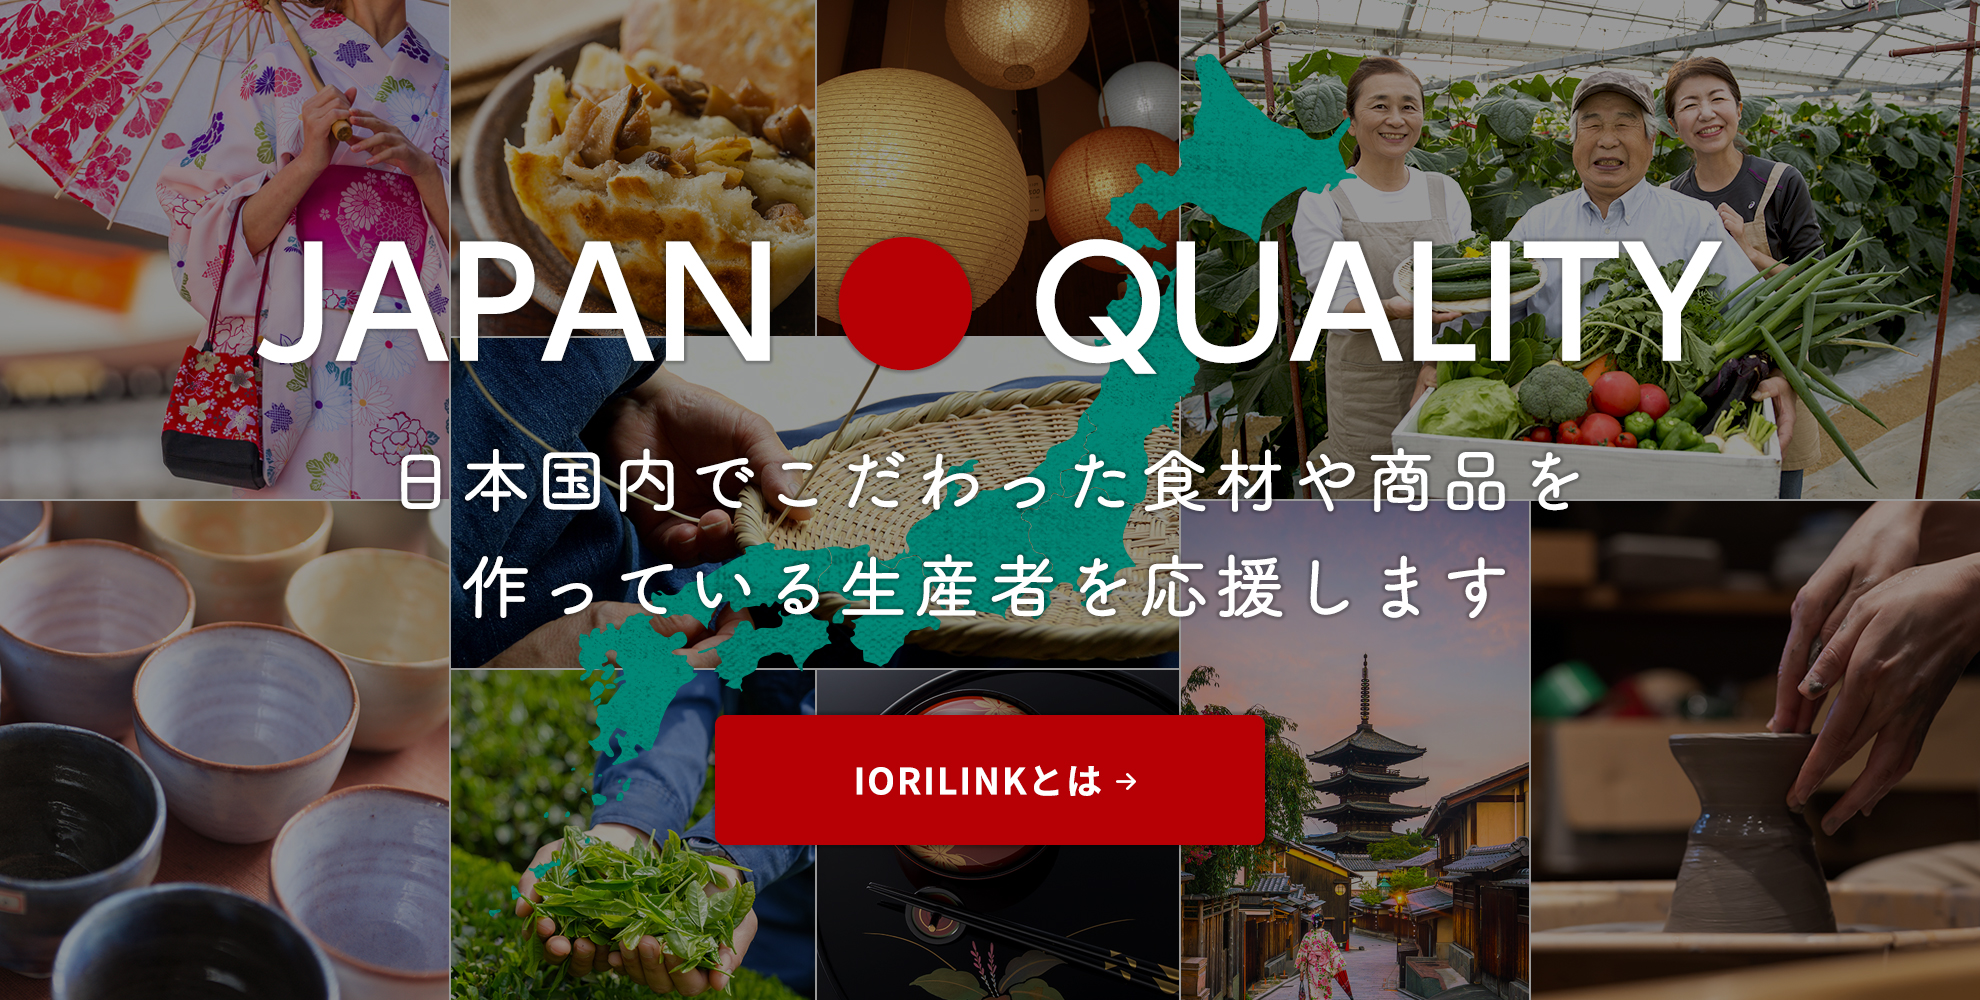 IORILINKは日本国内でこだわった食材や商品を作っている生産者を応援します